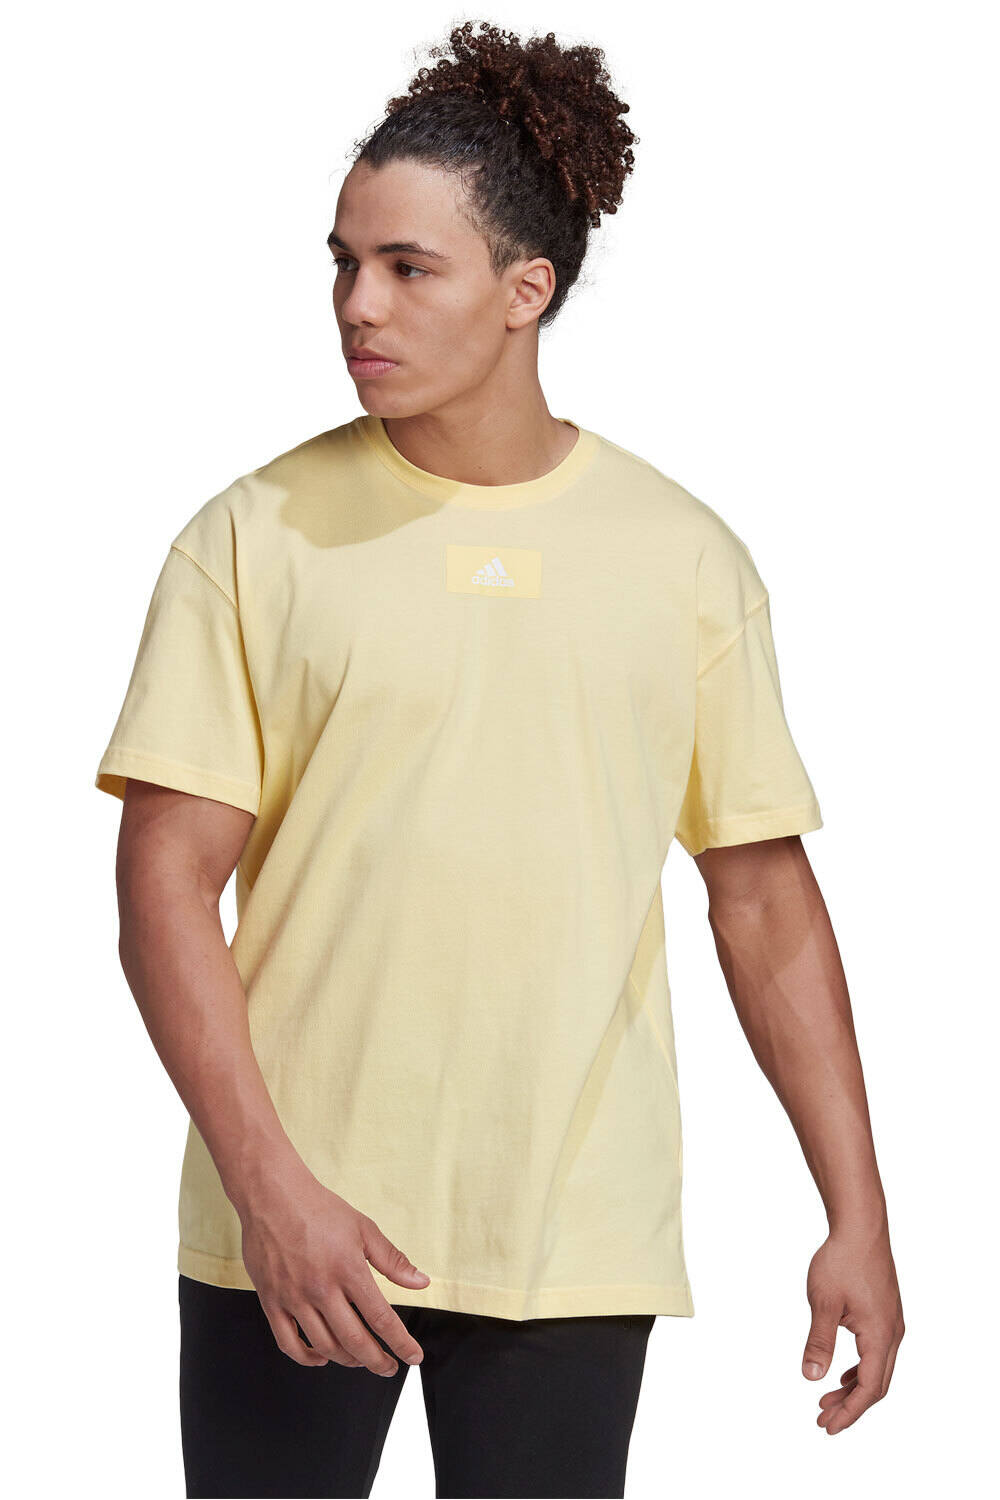 adidas camiseta manga corta hombre Essentials FeelVivid Drop Shoulder vista frontal